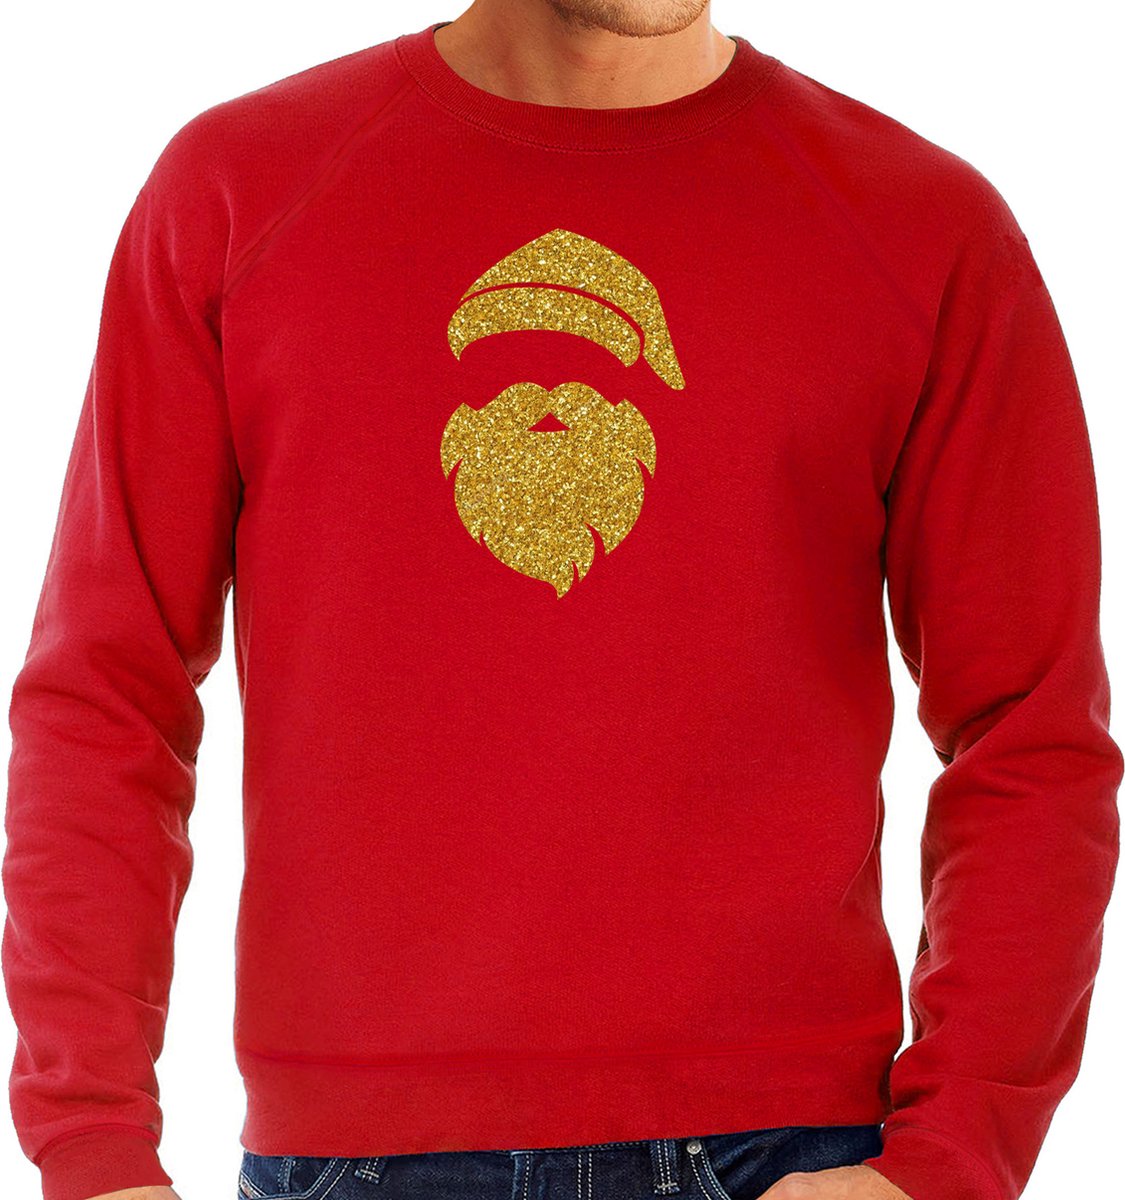 Kerstman hoofd Kerst trui - rood met gouden glitter bedrukking - heren - Kerst sweaters / Kerst outfit XL